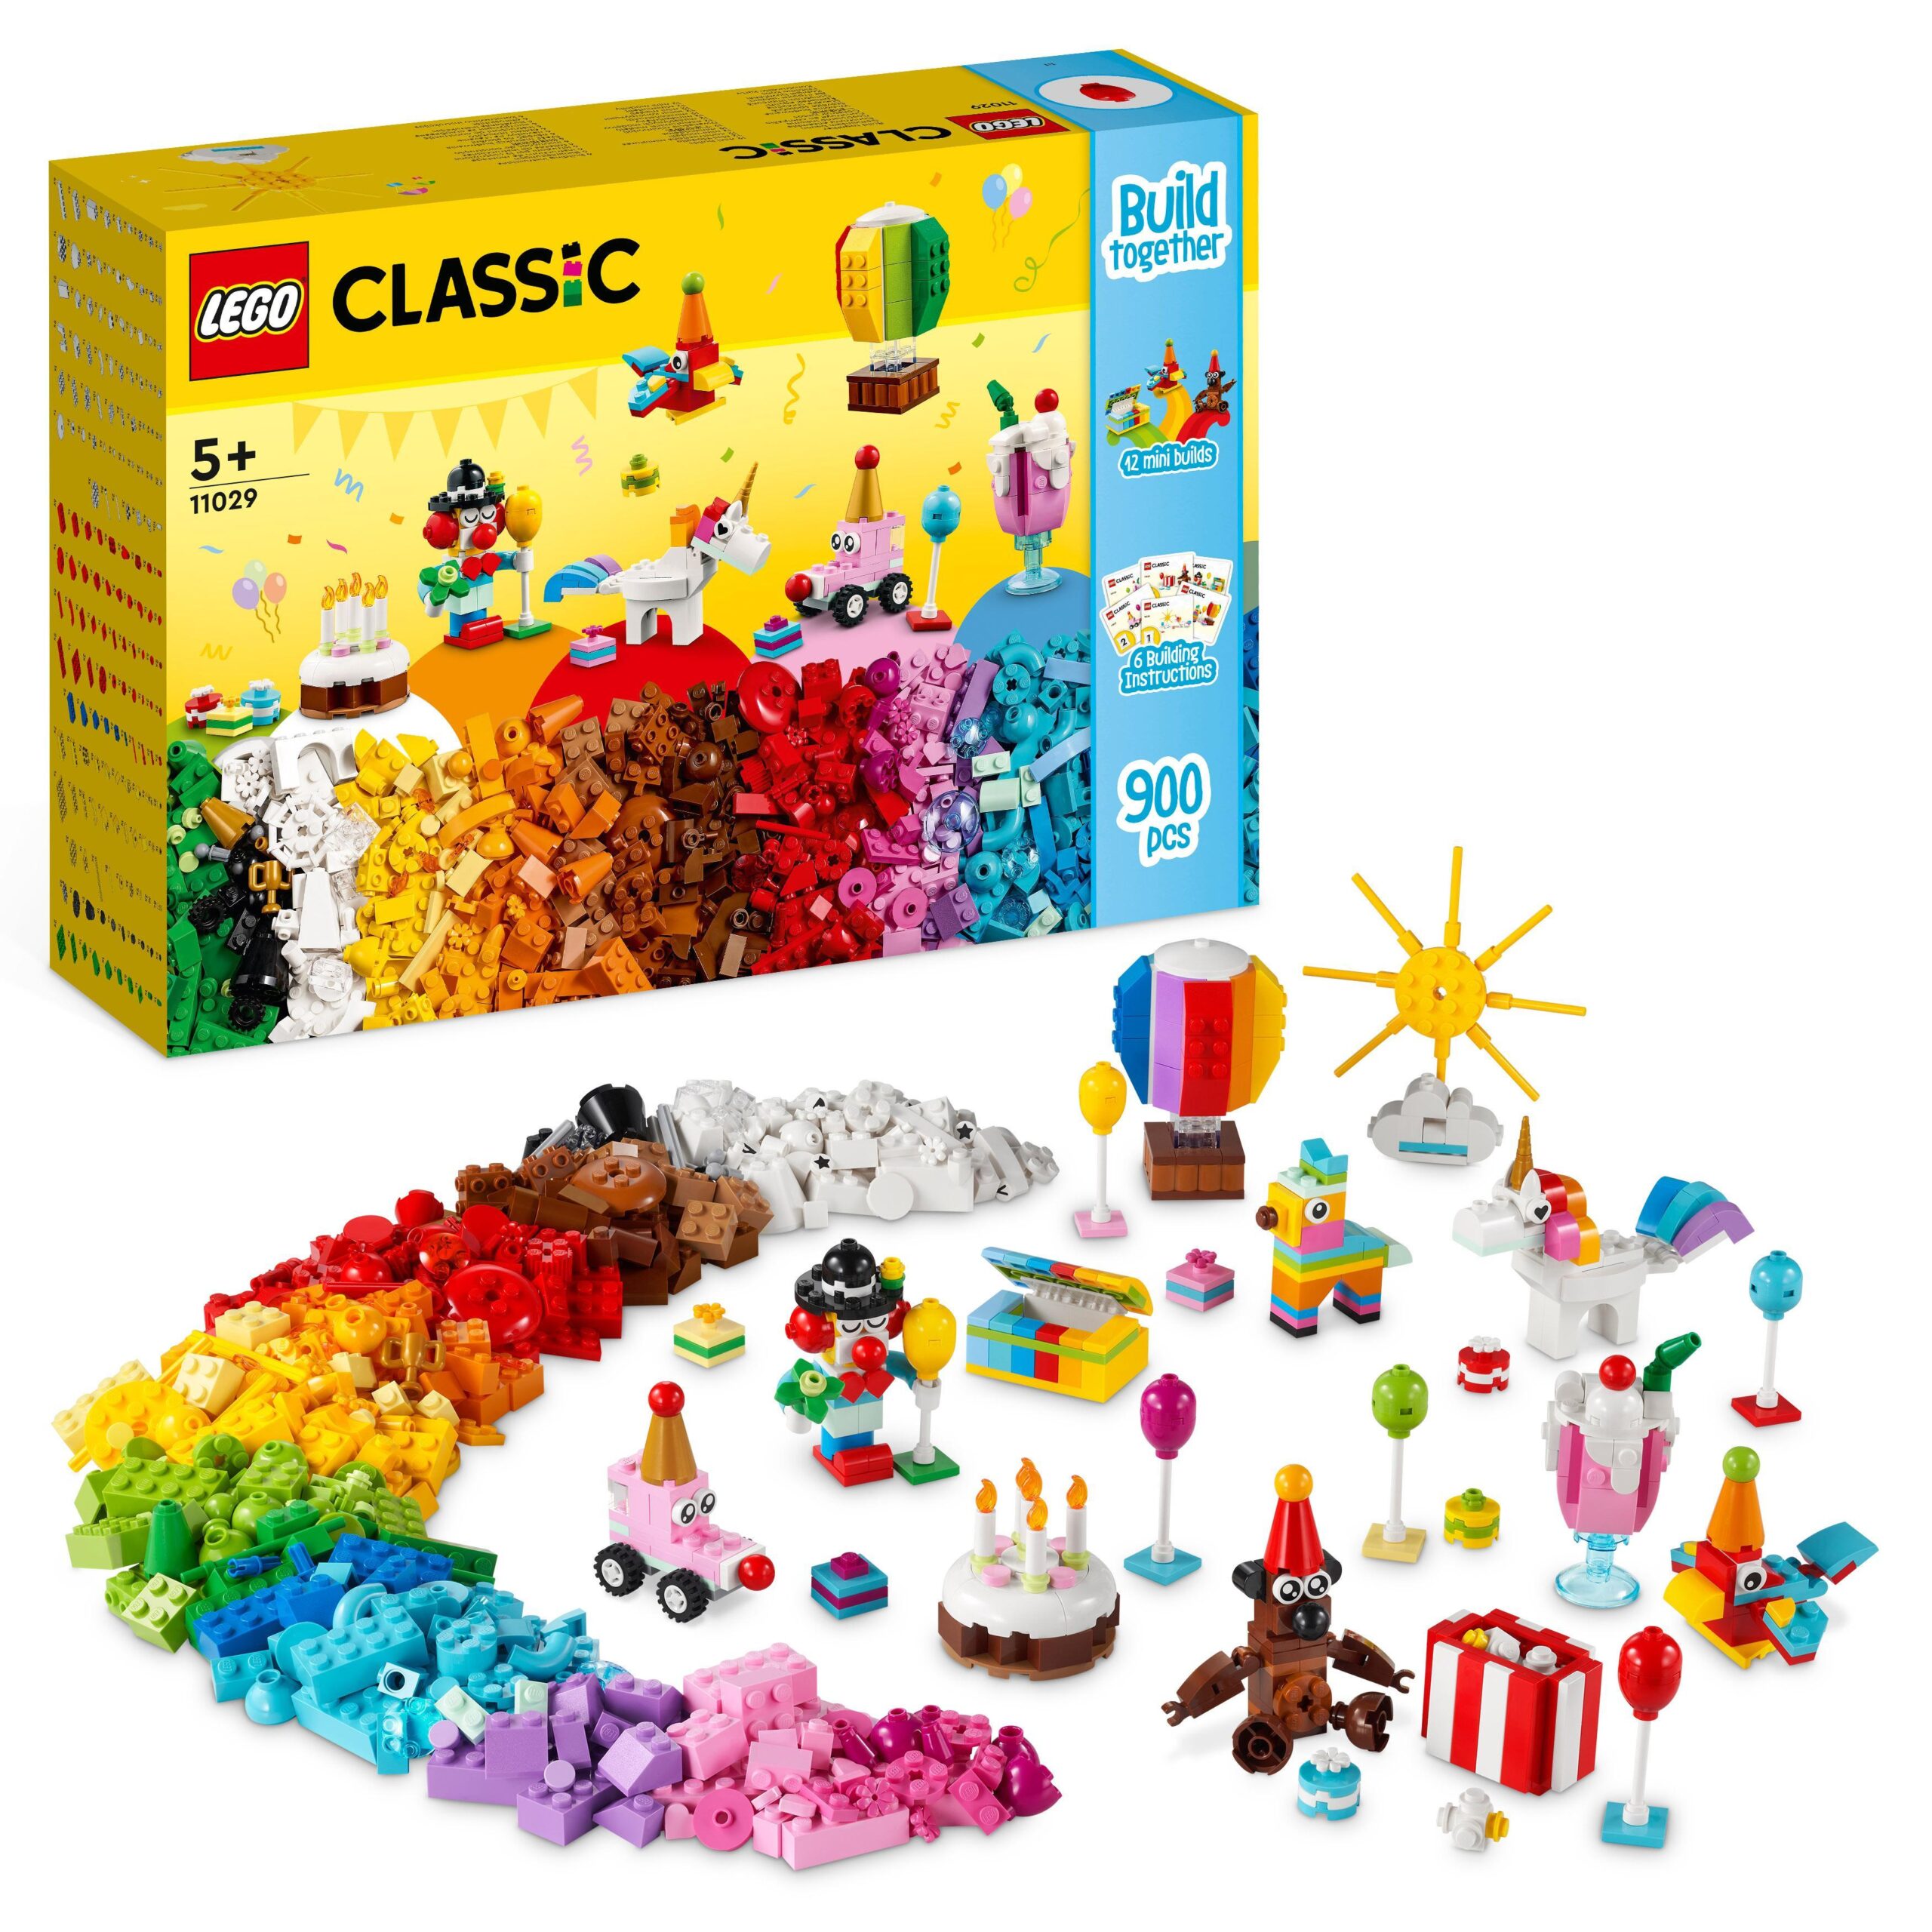 Lego classic 11029 party box creativa, giochi per bambini 5+ da condividere in famiglia con 12 mini-costruzioni in mattoncini - LEGO CLASSIC